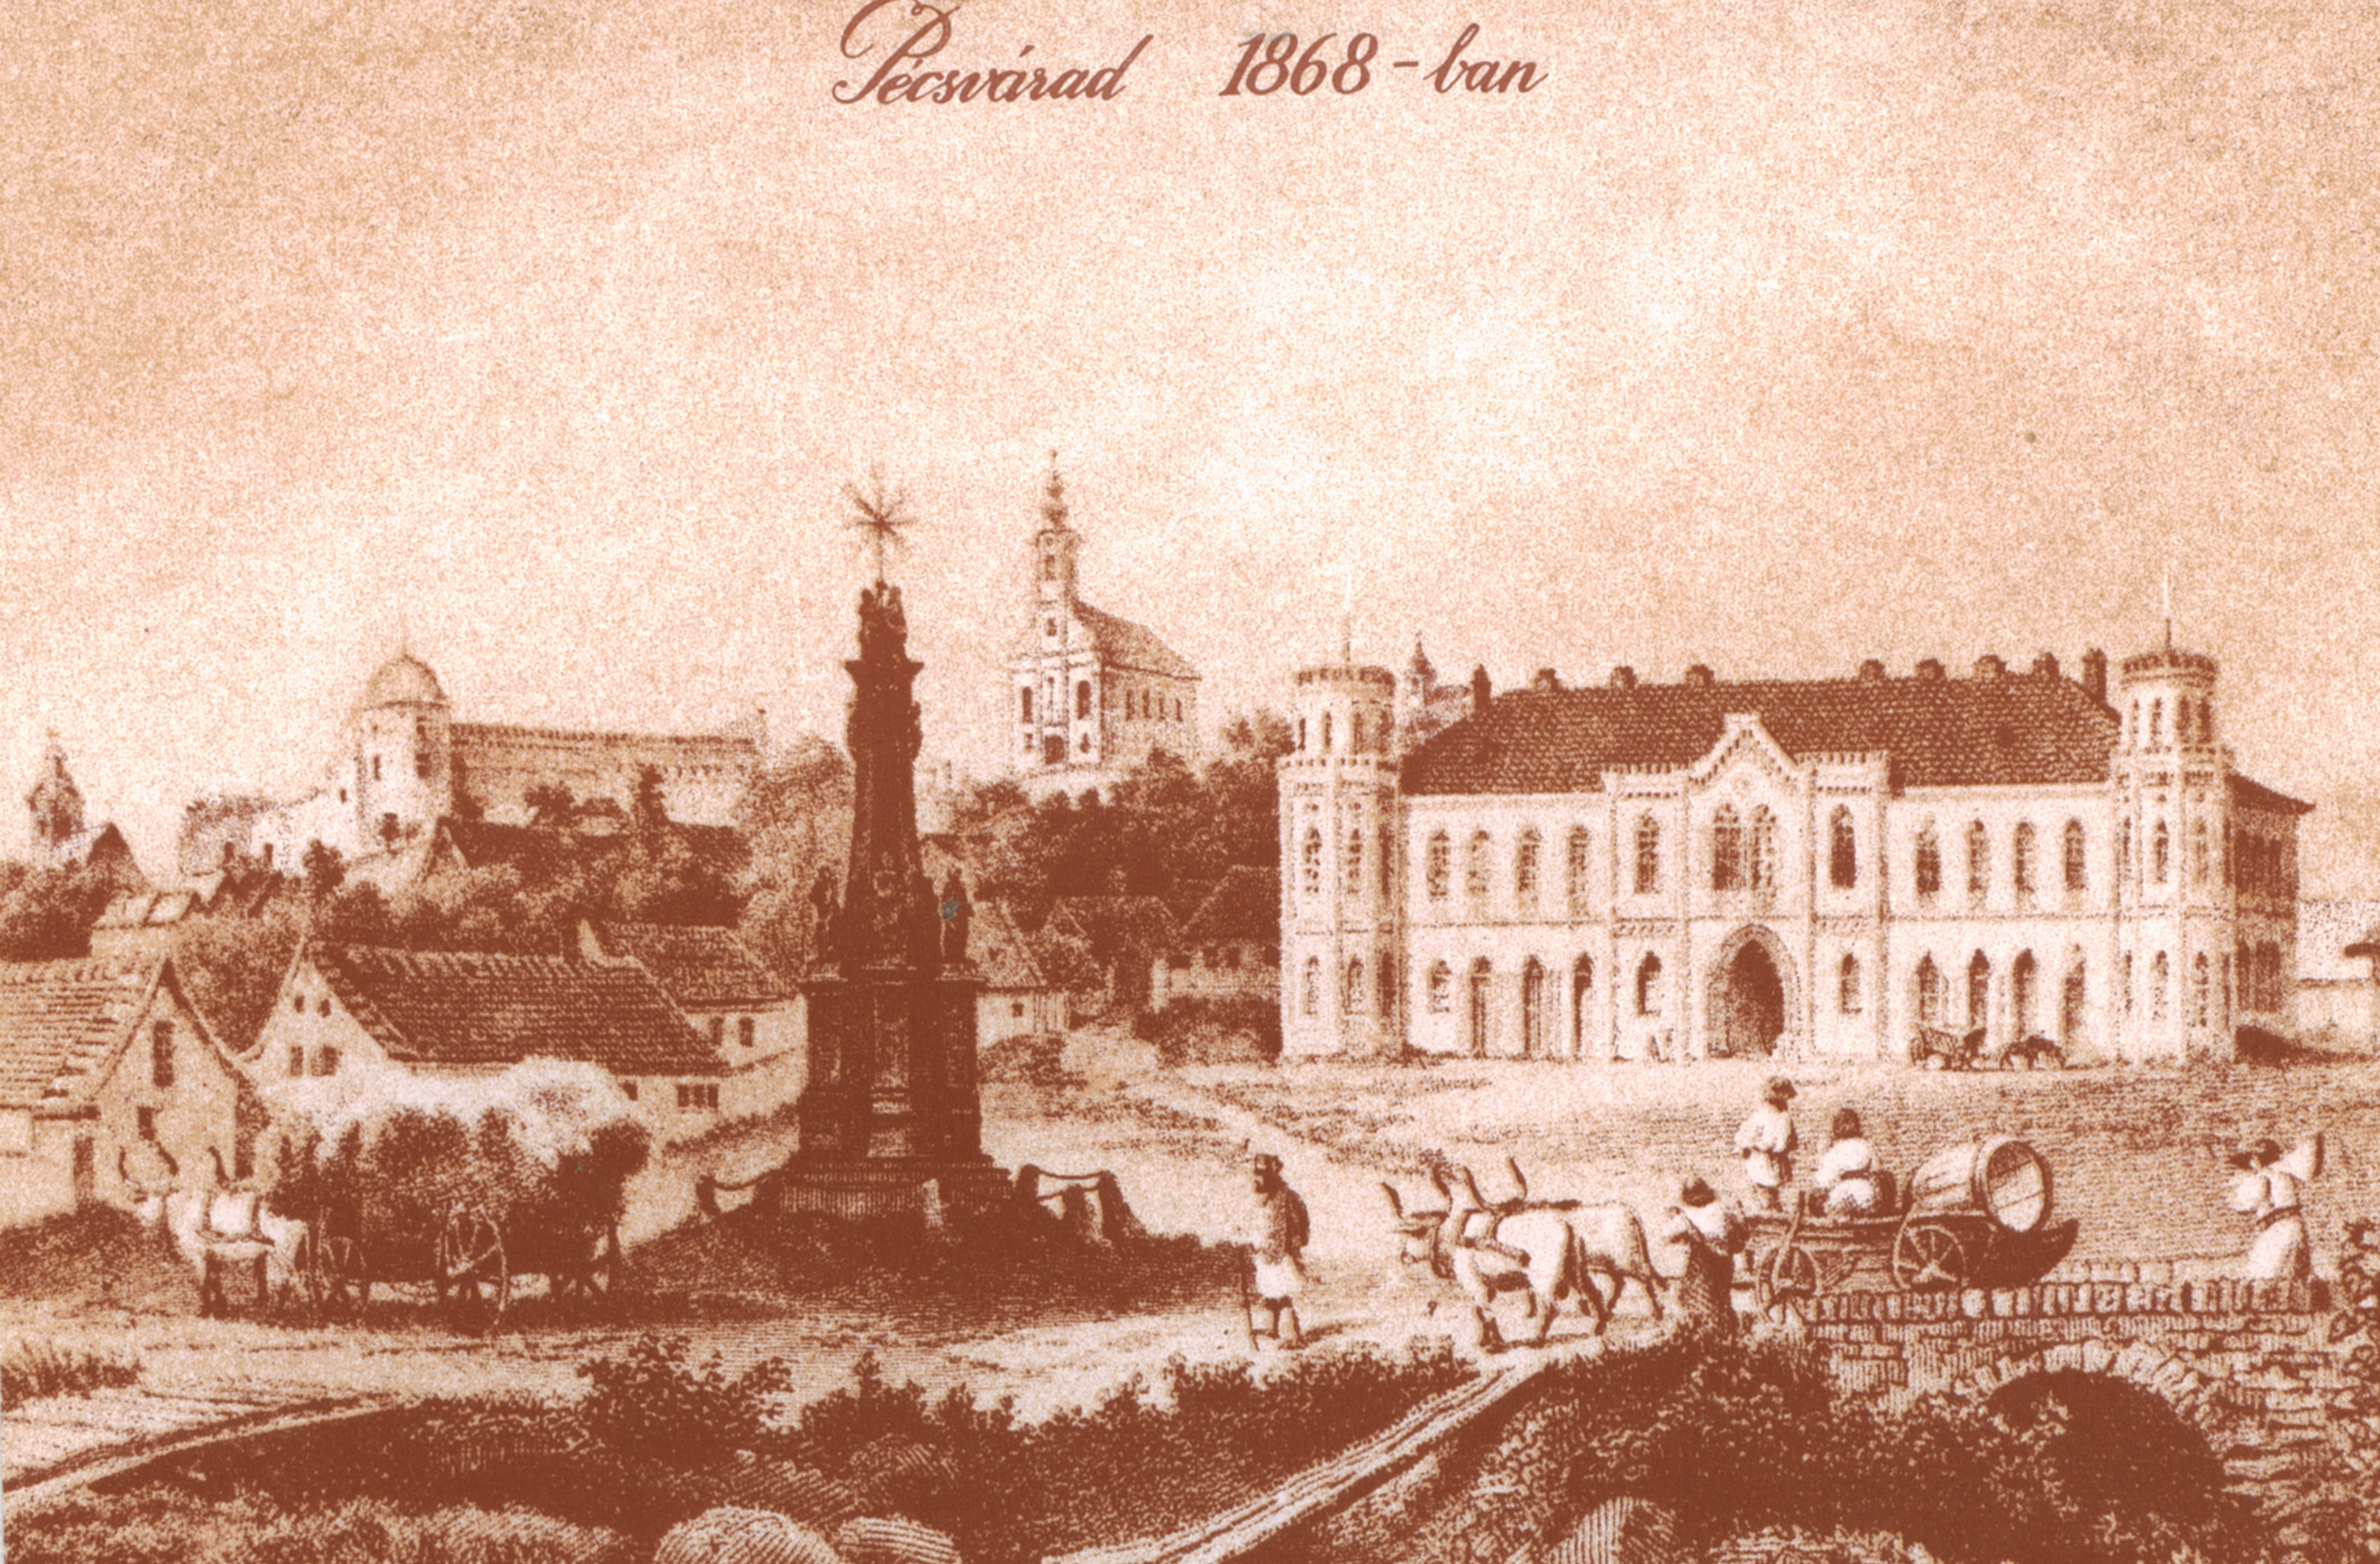 Pécsvárad Ludwig Lohbock metszete a 1870-es évekbeli városról